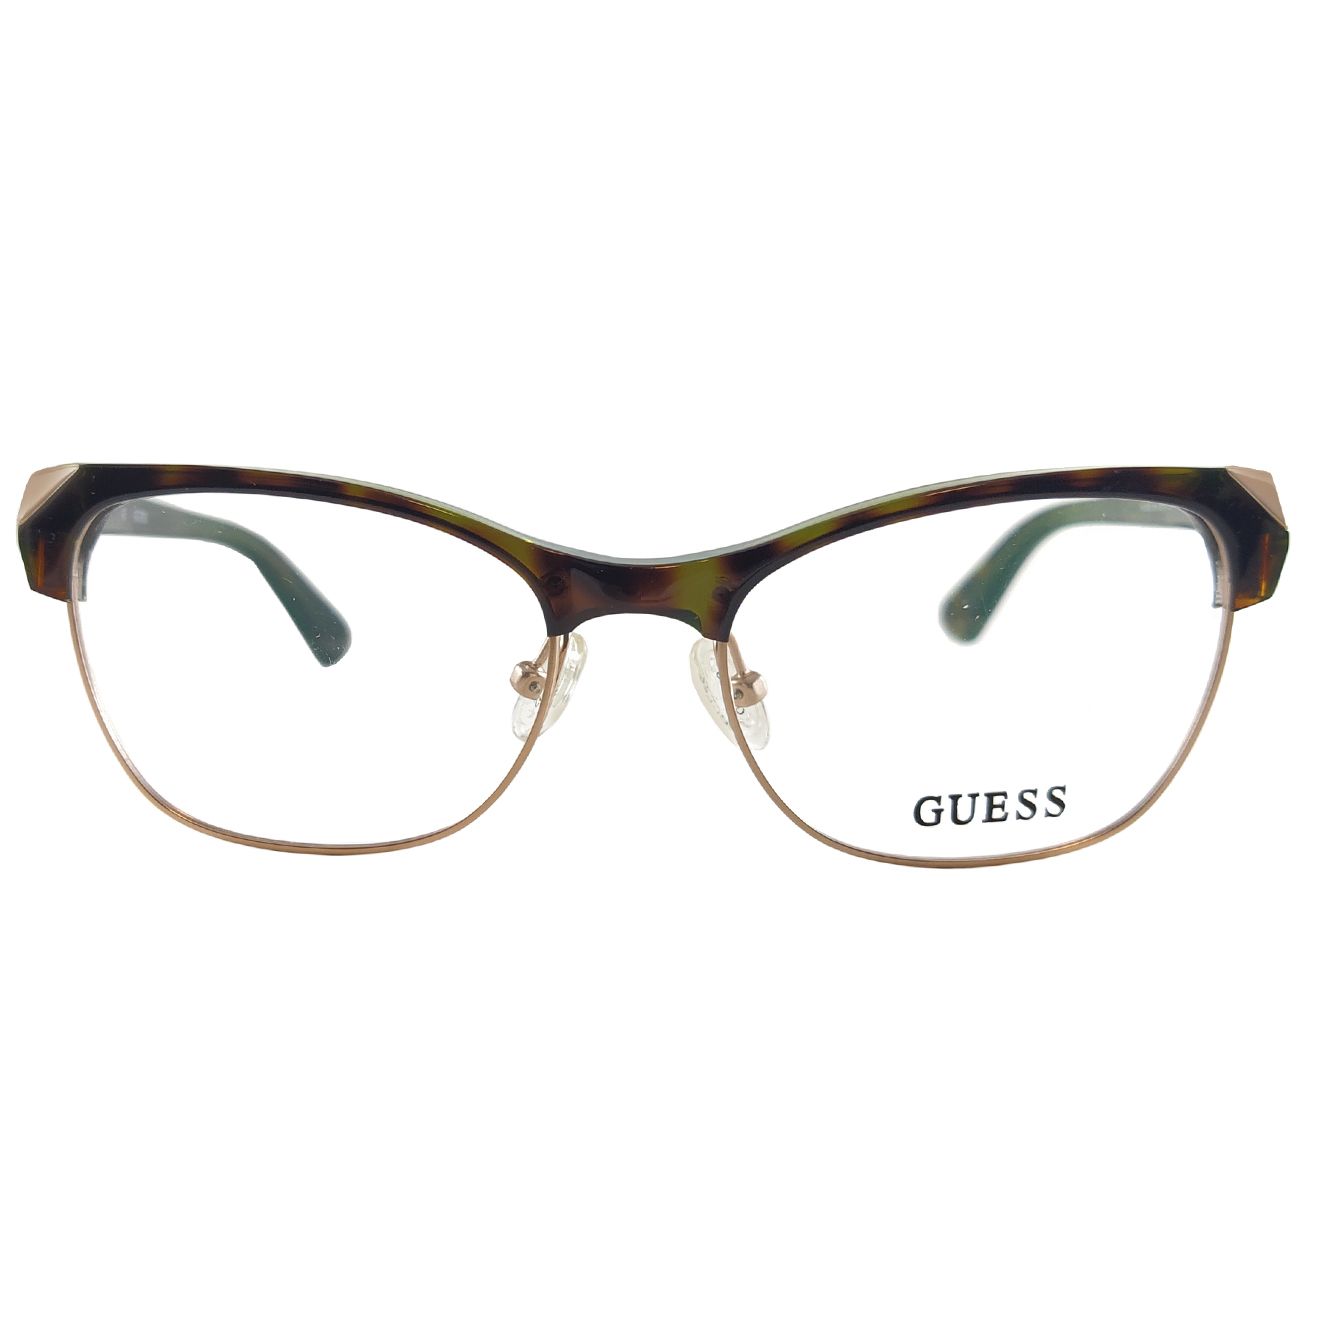 فریم عینک طبی زنانه گس مدل GU249305652 -  - 2